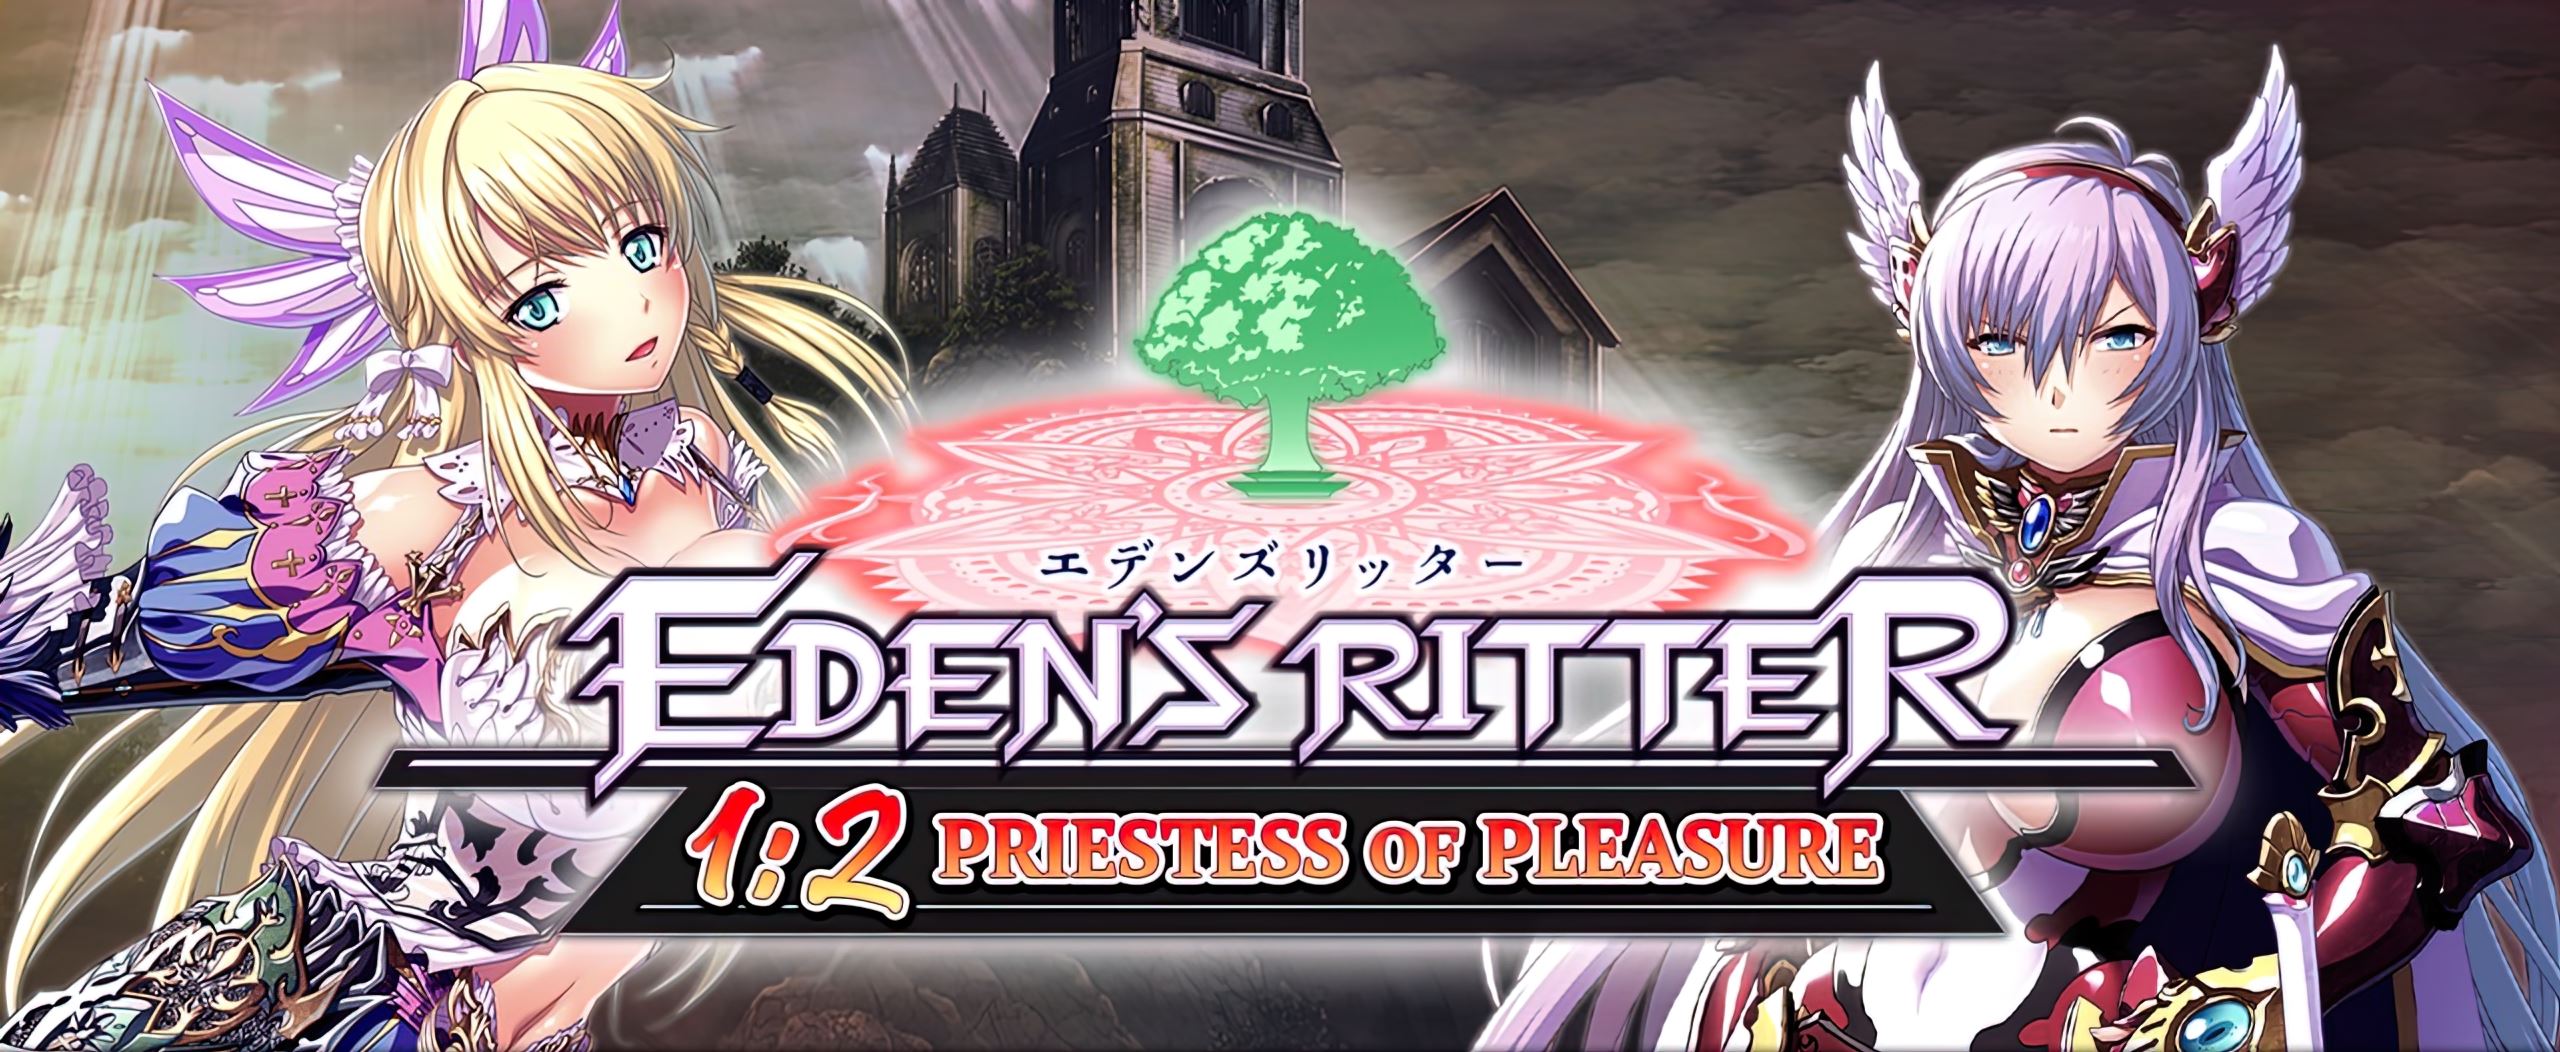 Eden’s Ritter 1:2 Priestess of Pleasure porn xxx game download cover